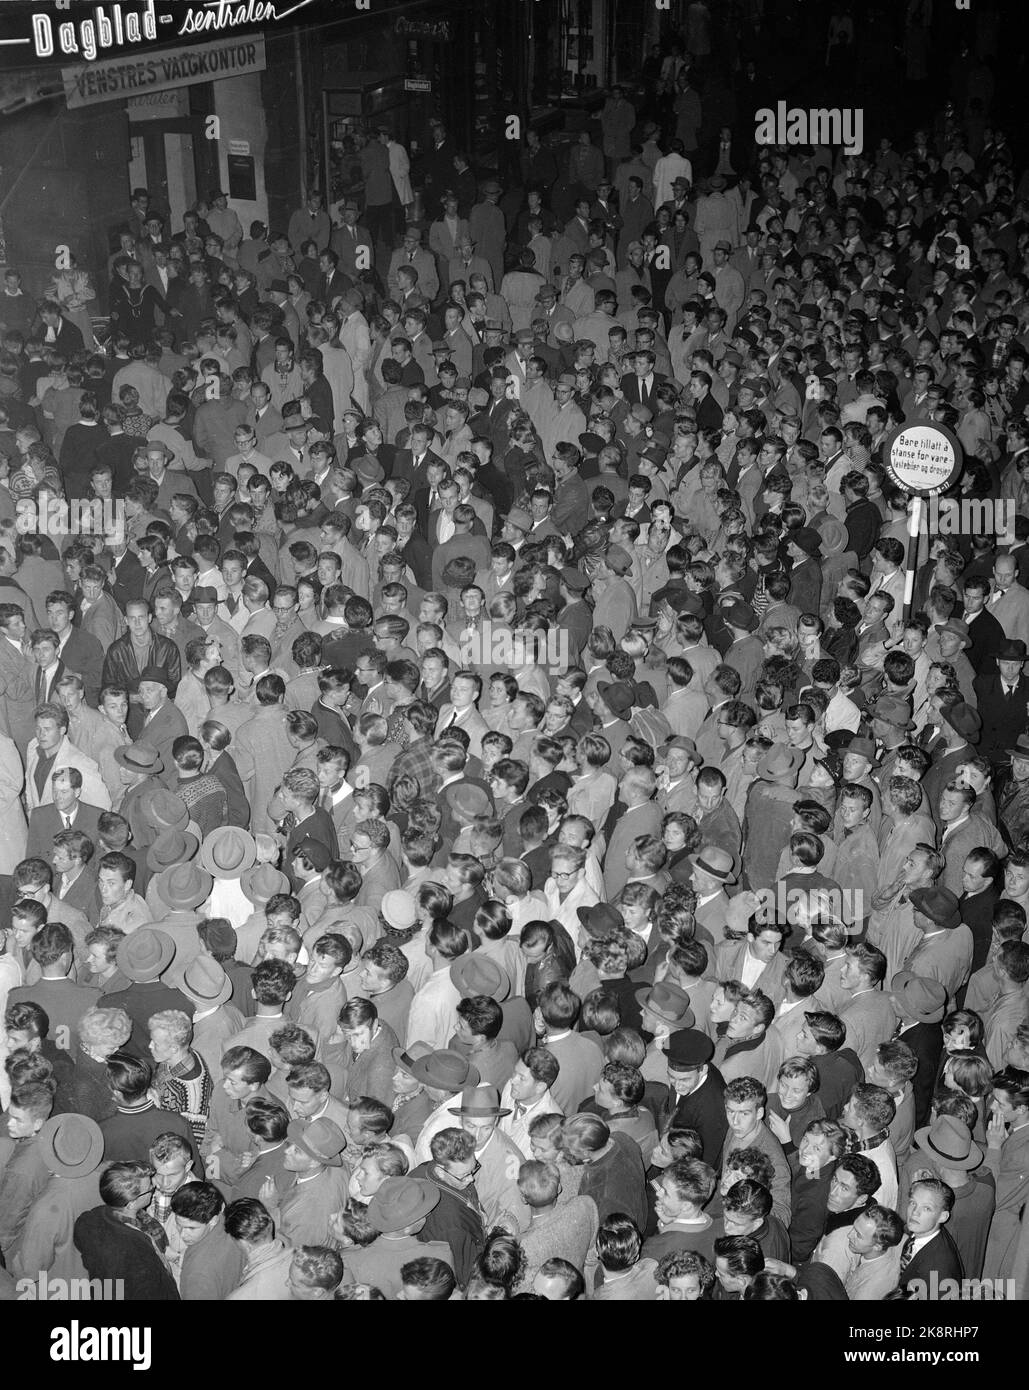 Oslo 19551003. Les élections municipales 1955. Beaucoup de gens suivent le compte sur les affiches dans la nuit Akersgaten jusqu'à 4 octobre. La foule, les gens se rapprochent. Photo: NTB / NTB Banque D'Images